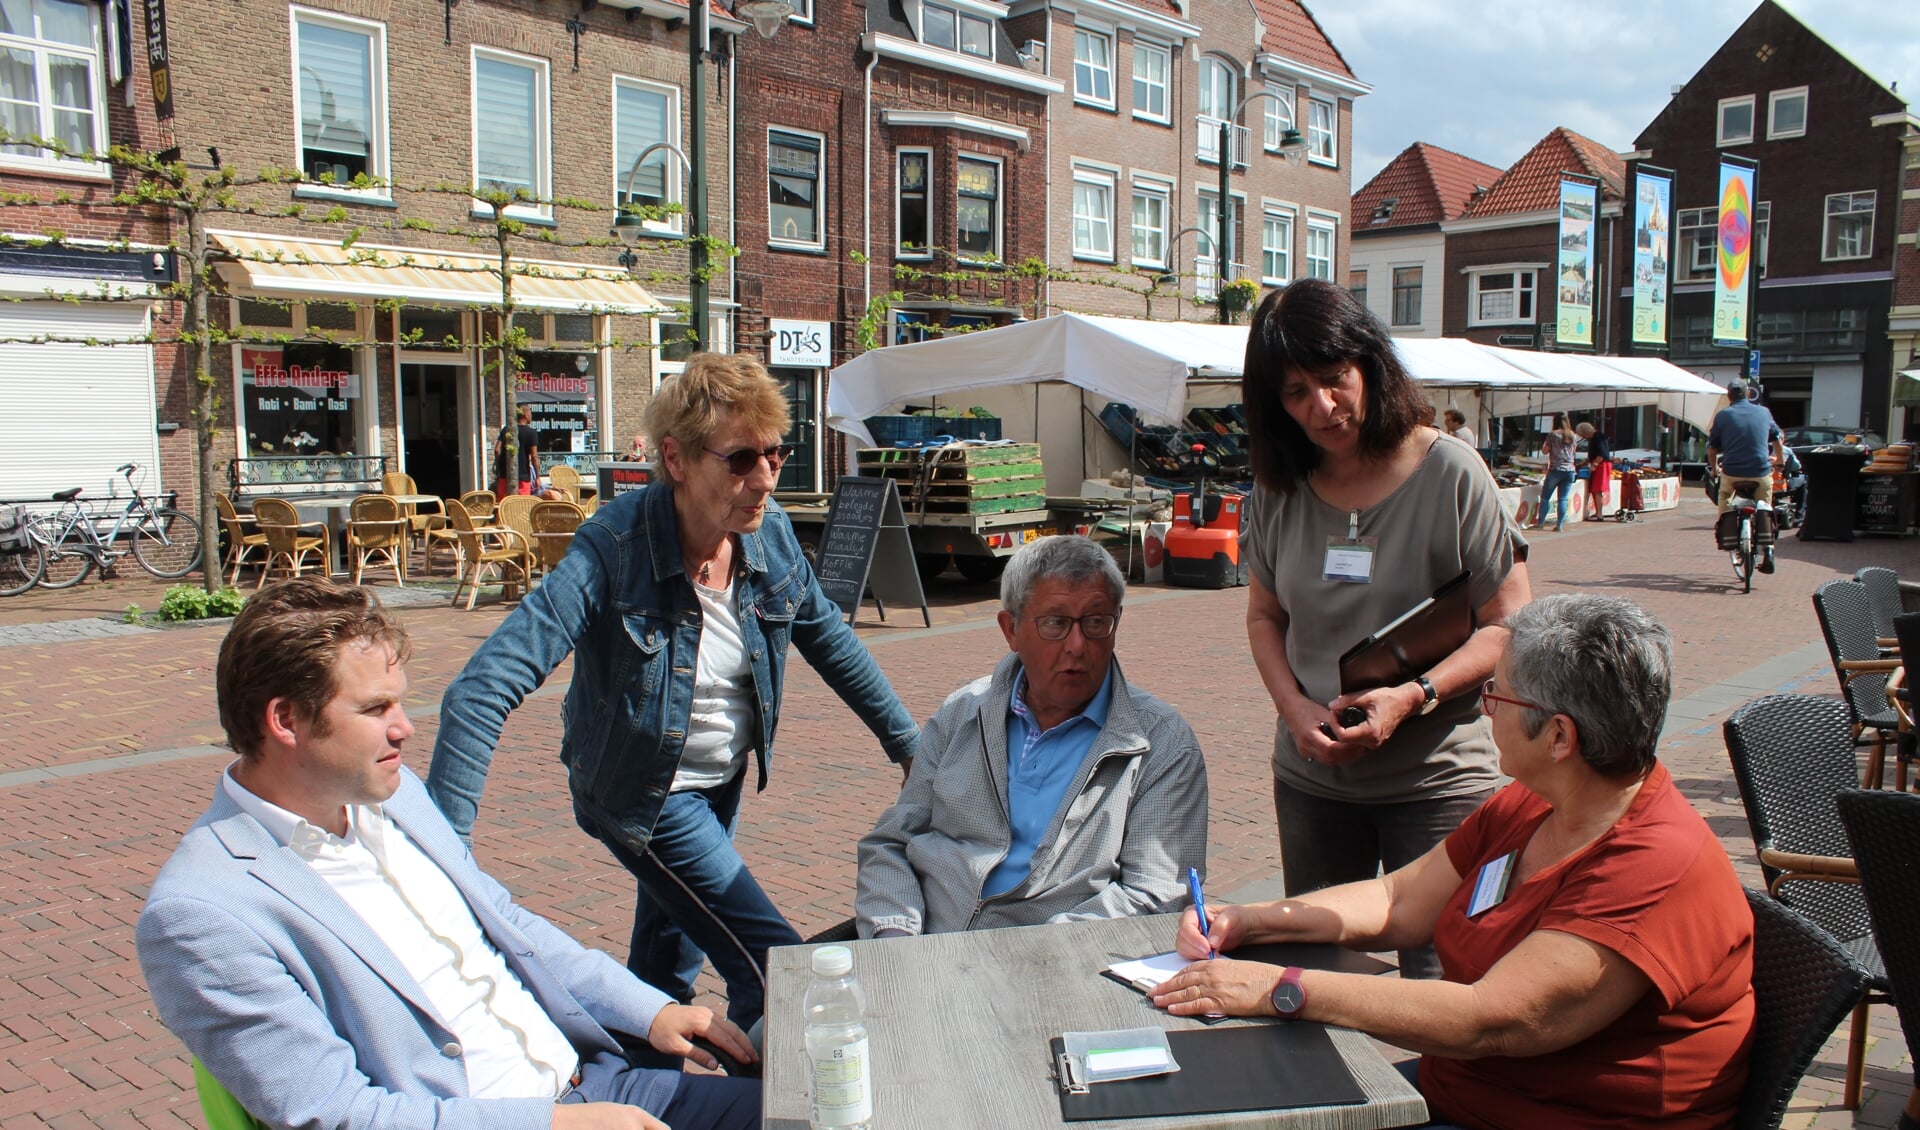 Middenin de samenleving in gesprek met bewoners uit de gemeente Steenbergen is een belangrijk direct contact.